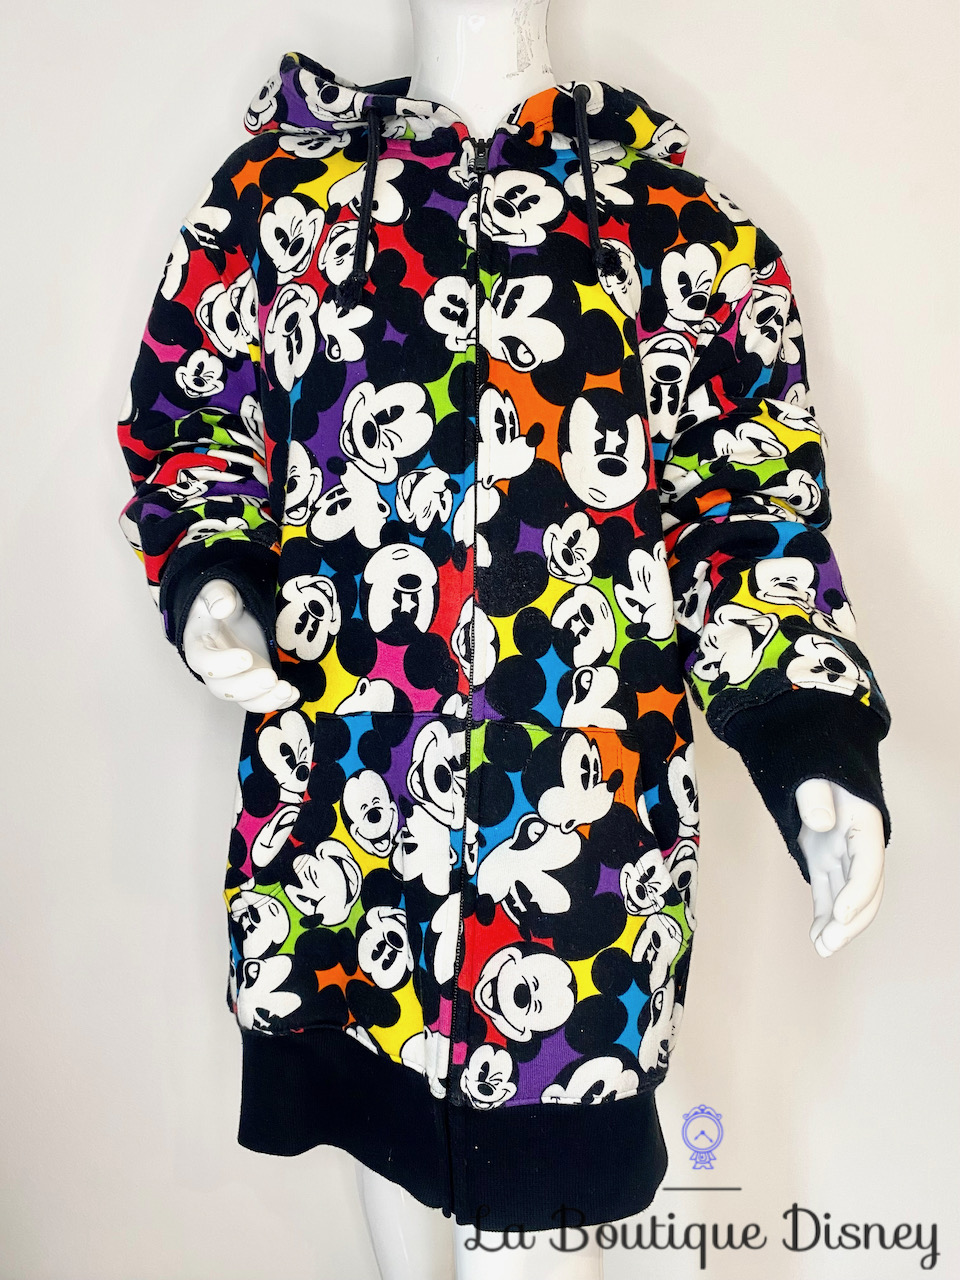 Veste capuche Mickey Mouse multicolore Disneyland Paris Disney taille S visage tête